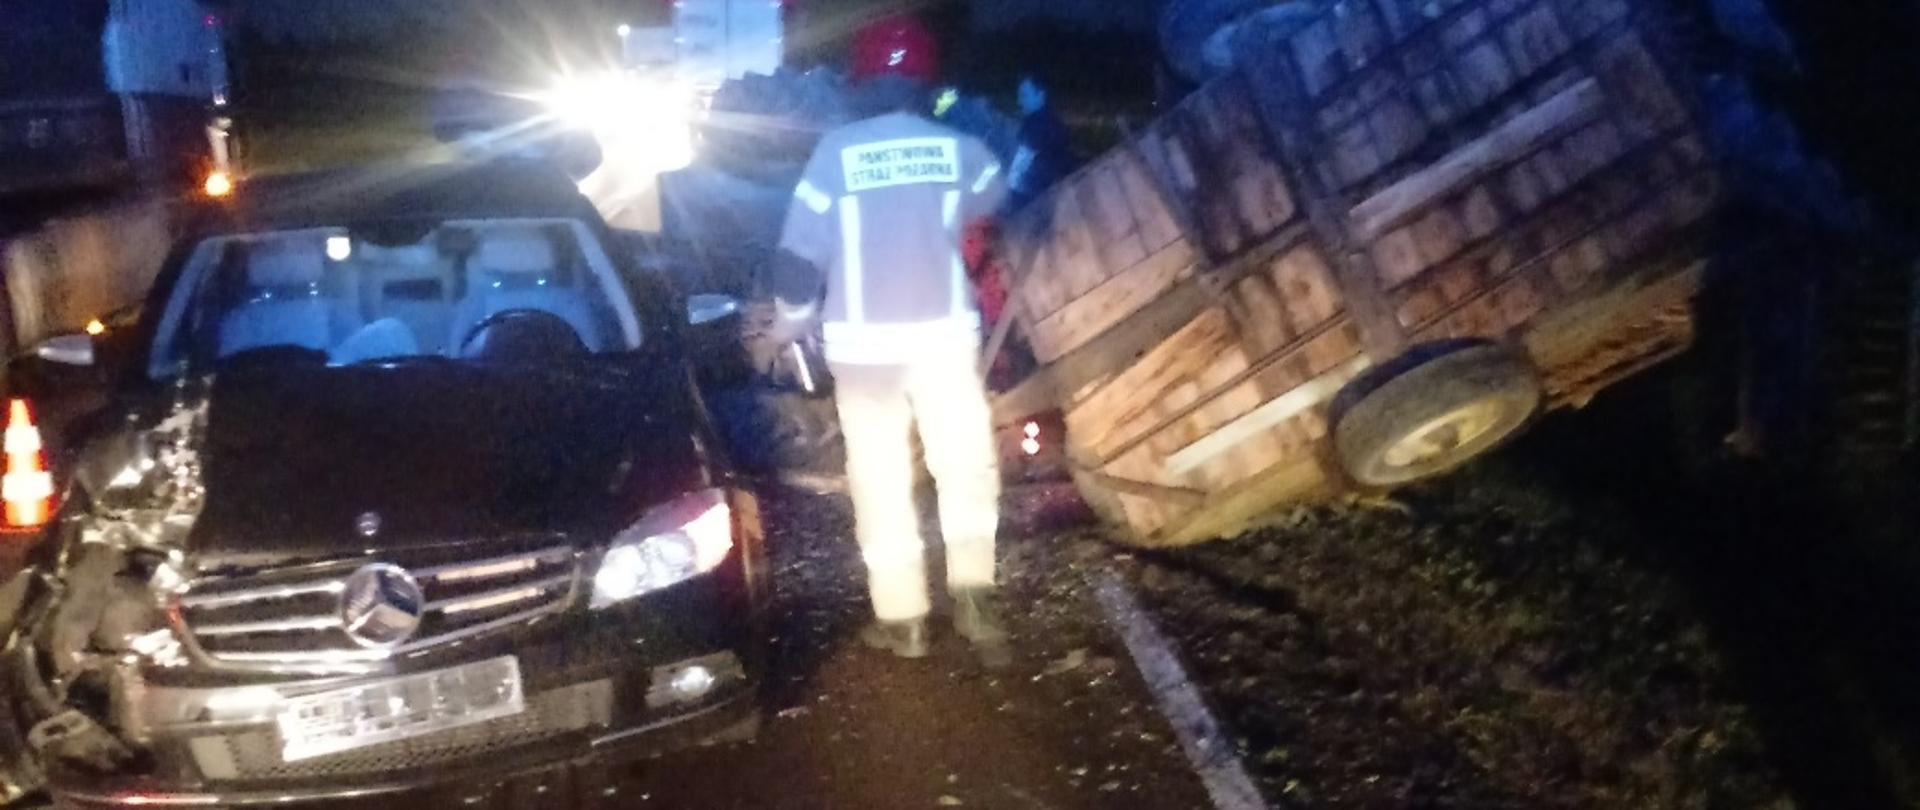 Wypadek samochodu osobowego i ciągnika rolniczego w miejscowości Rybaki.